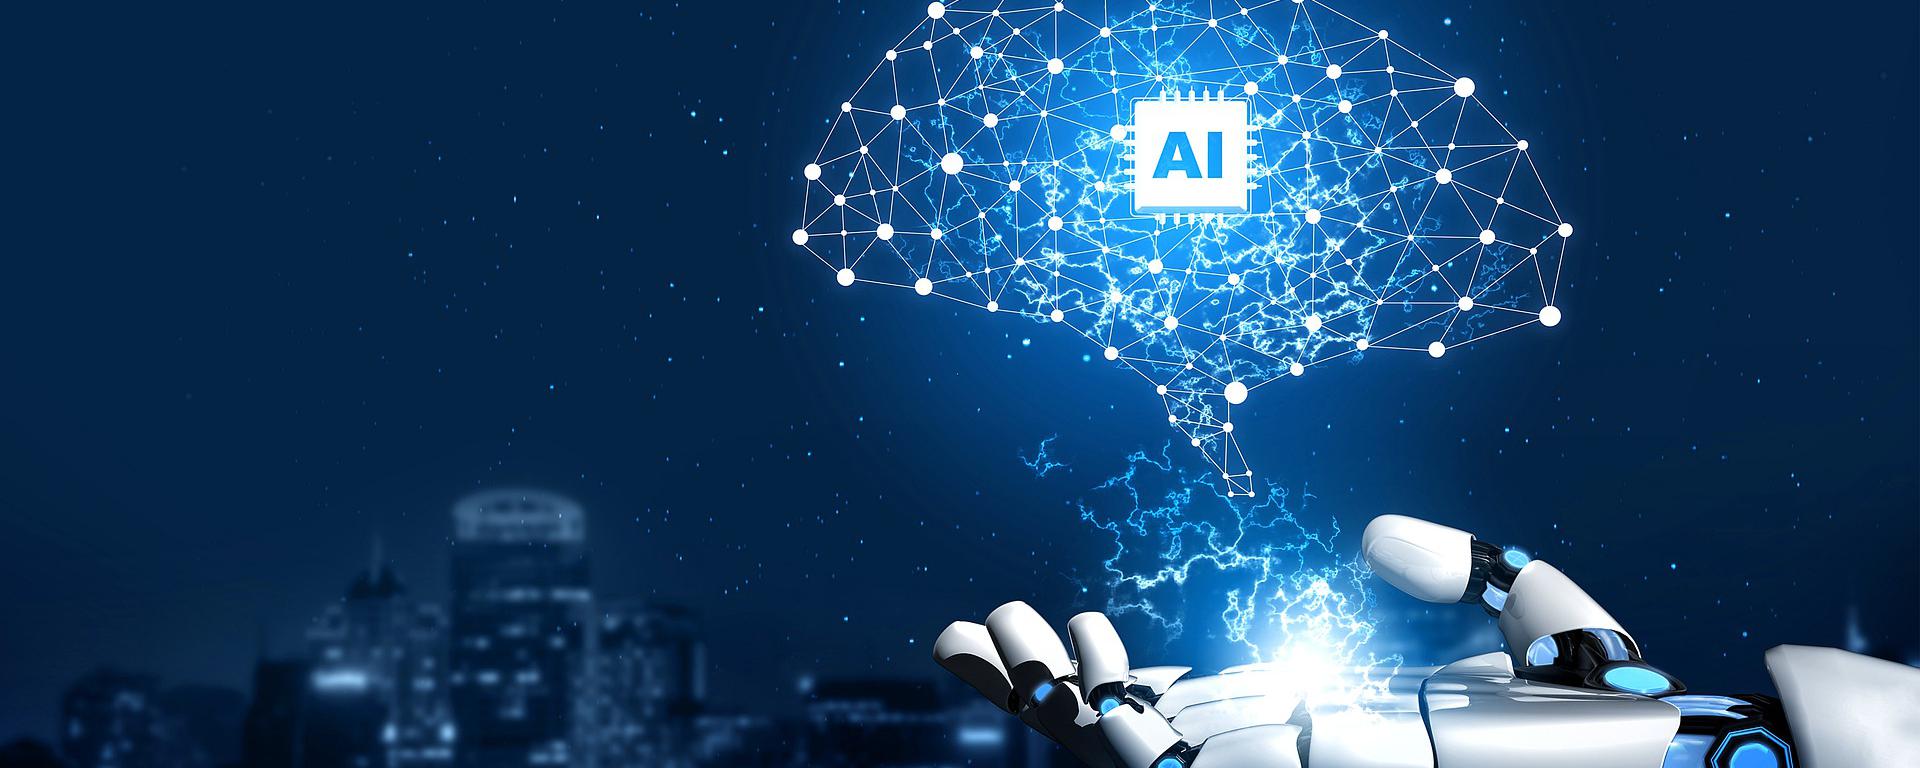 ¿Realmente la inteligencia artificial nos quitará nuestros empleos?